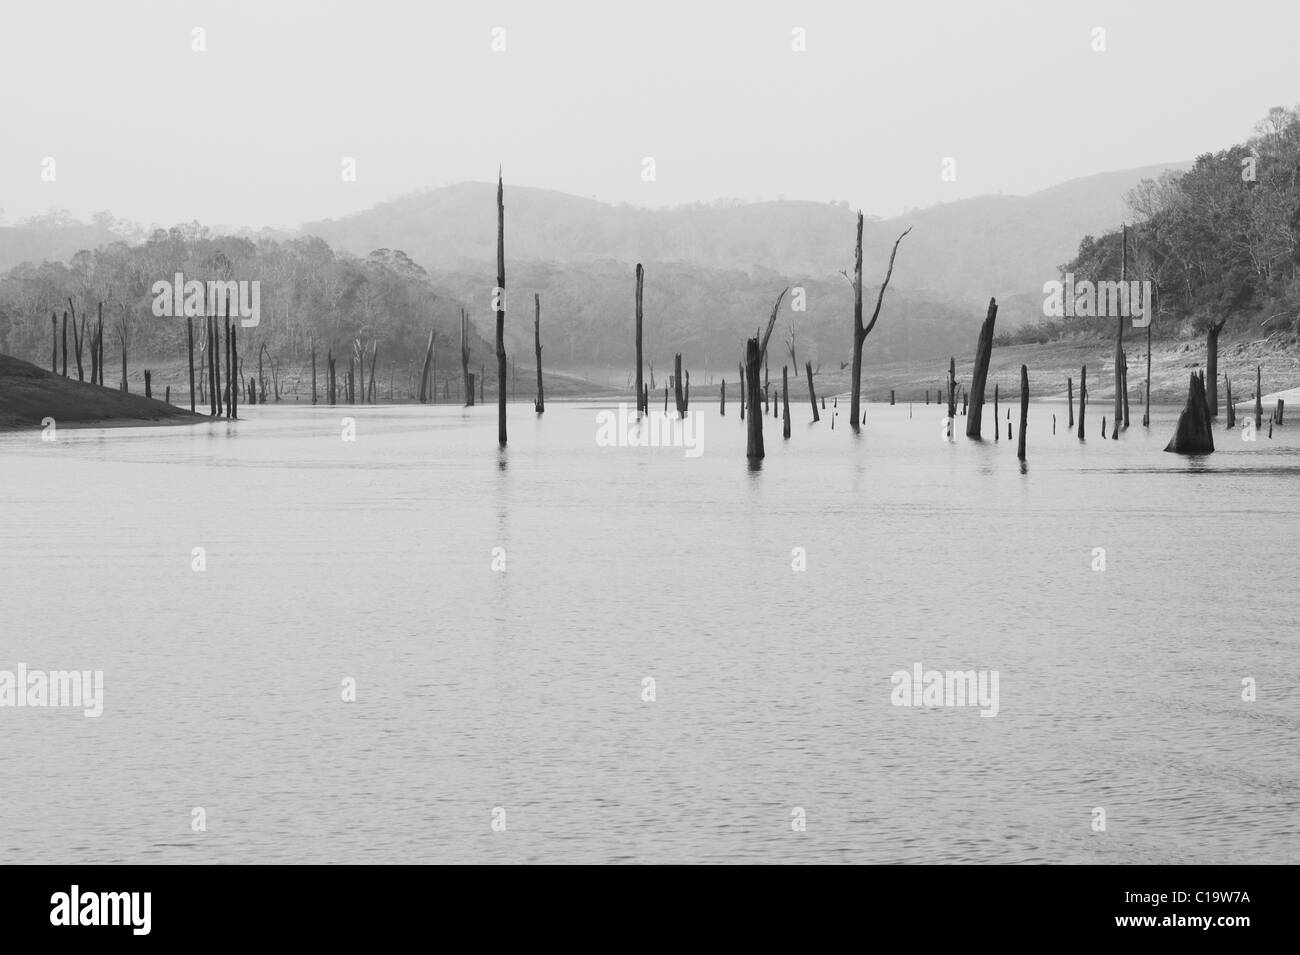 Poteaux de bois et arbres morts dans un lac, Thekkady Lake, parc national de Periyar, Thekkady, Kerala, Inde Banque D'Images